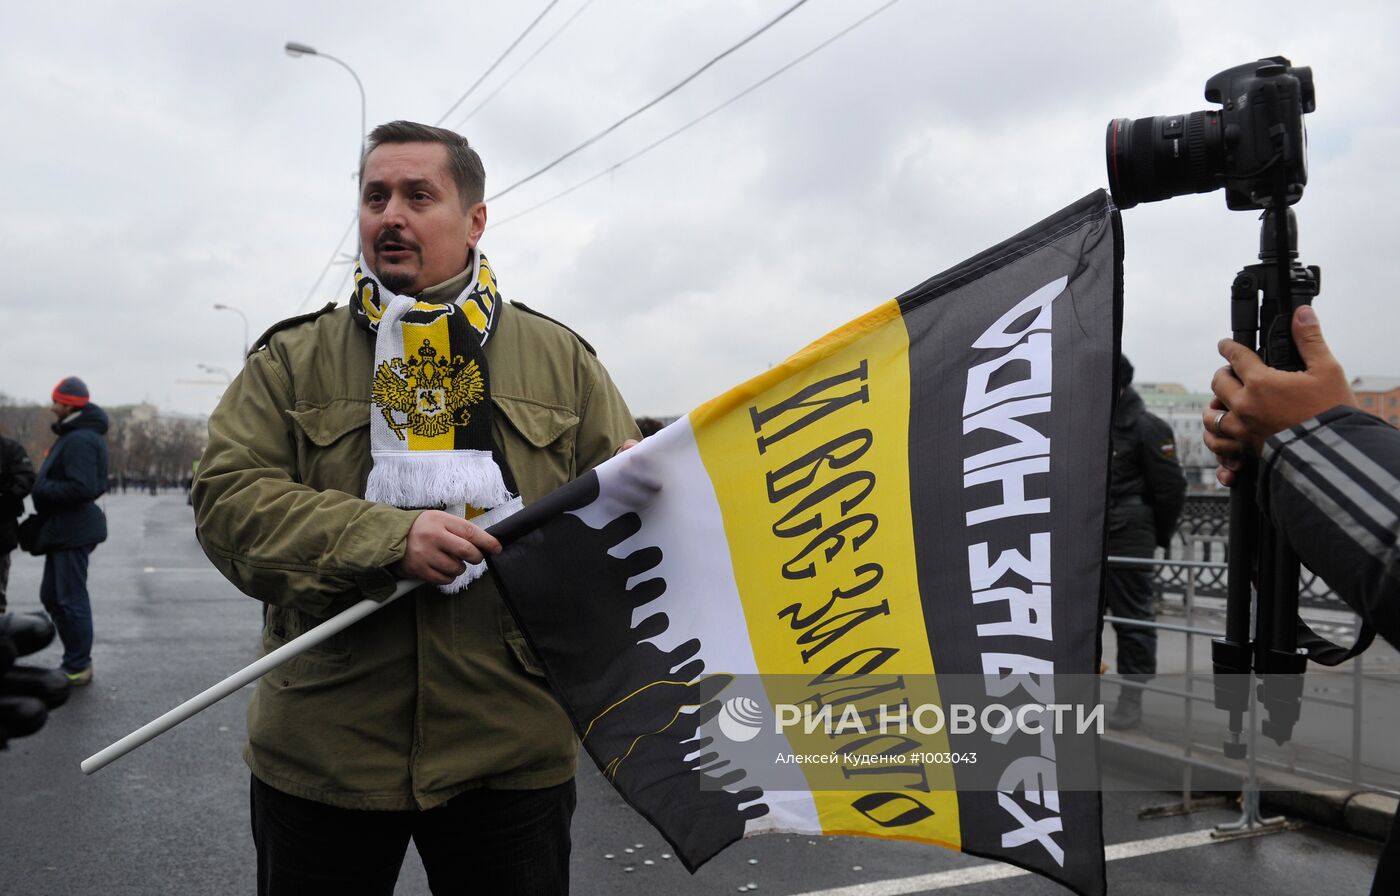 Митинг националистов на Болотной площади в Москве